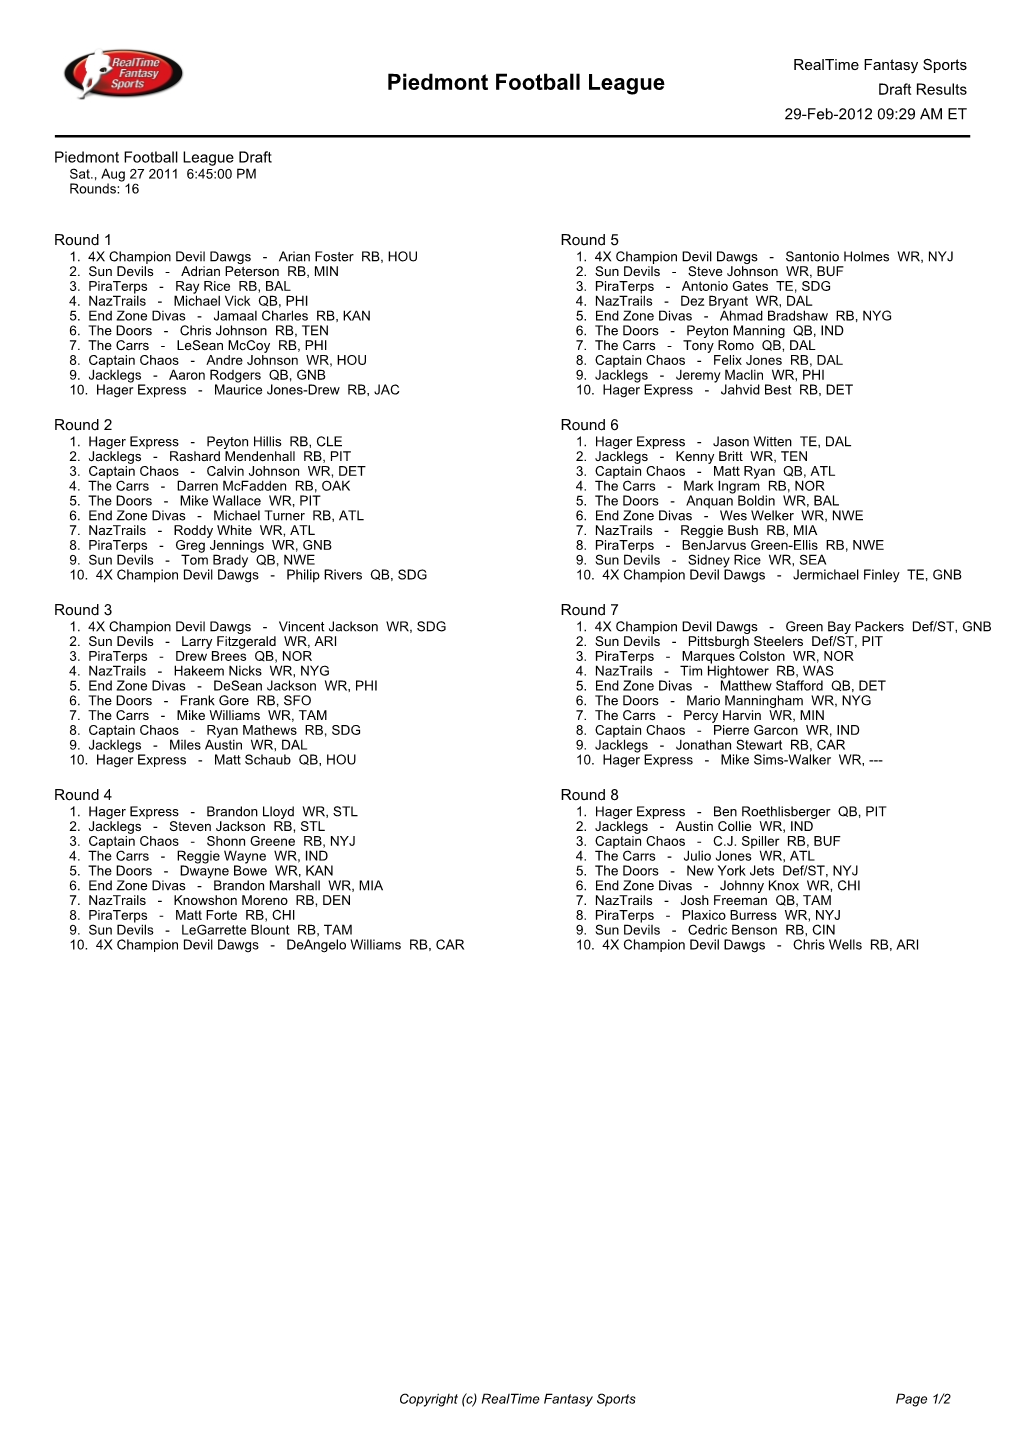 Piedmont Football League Draft Results 29-Feb-2012 09:29 AM ET